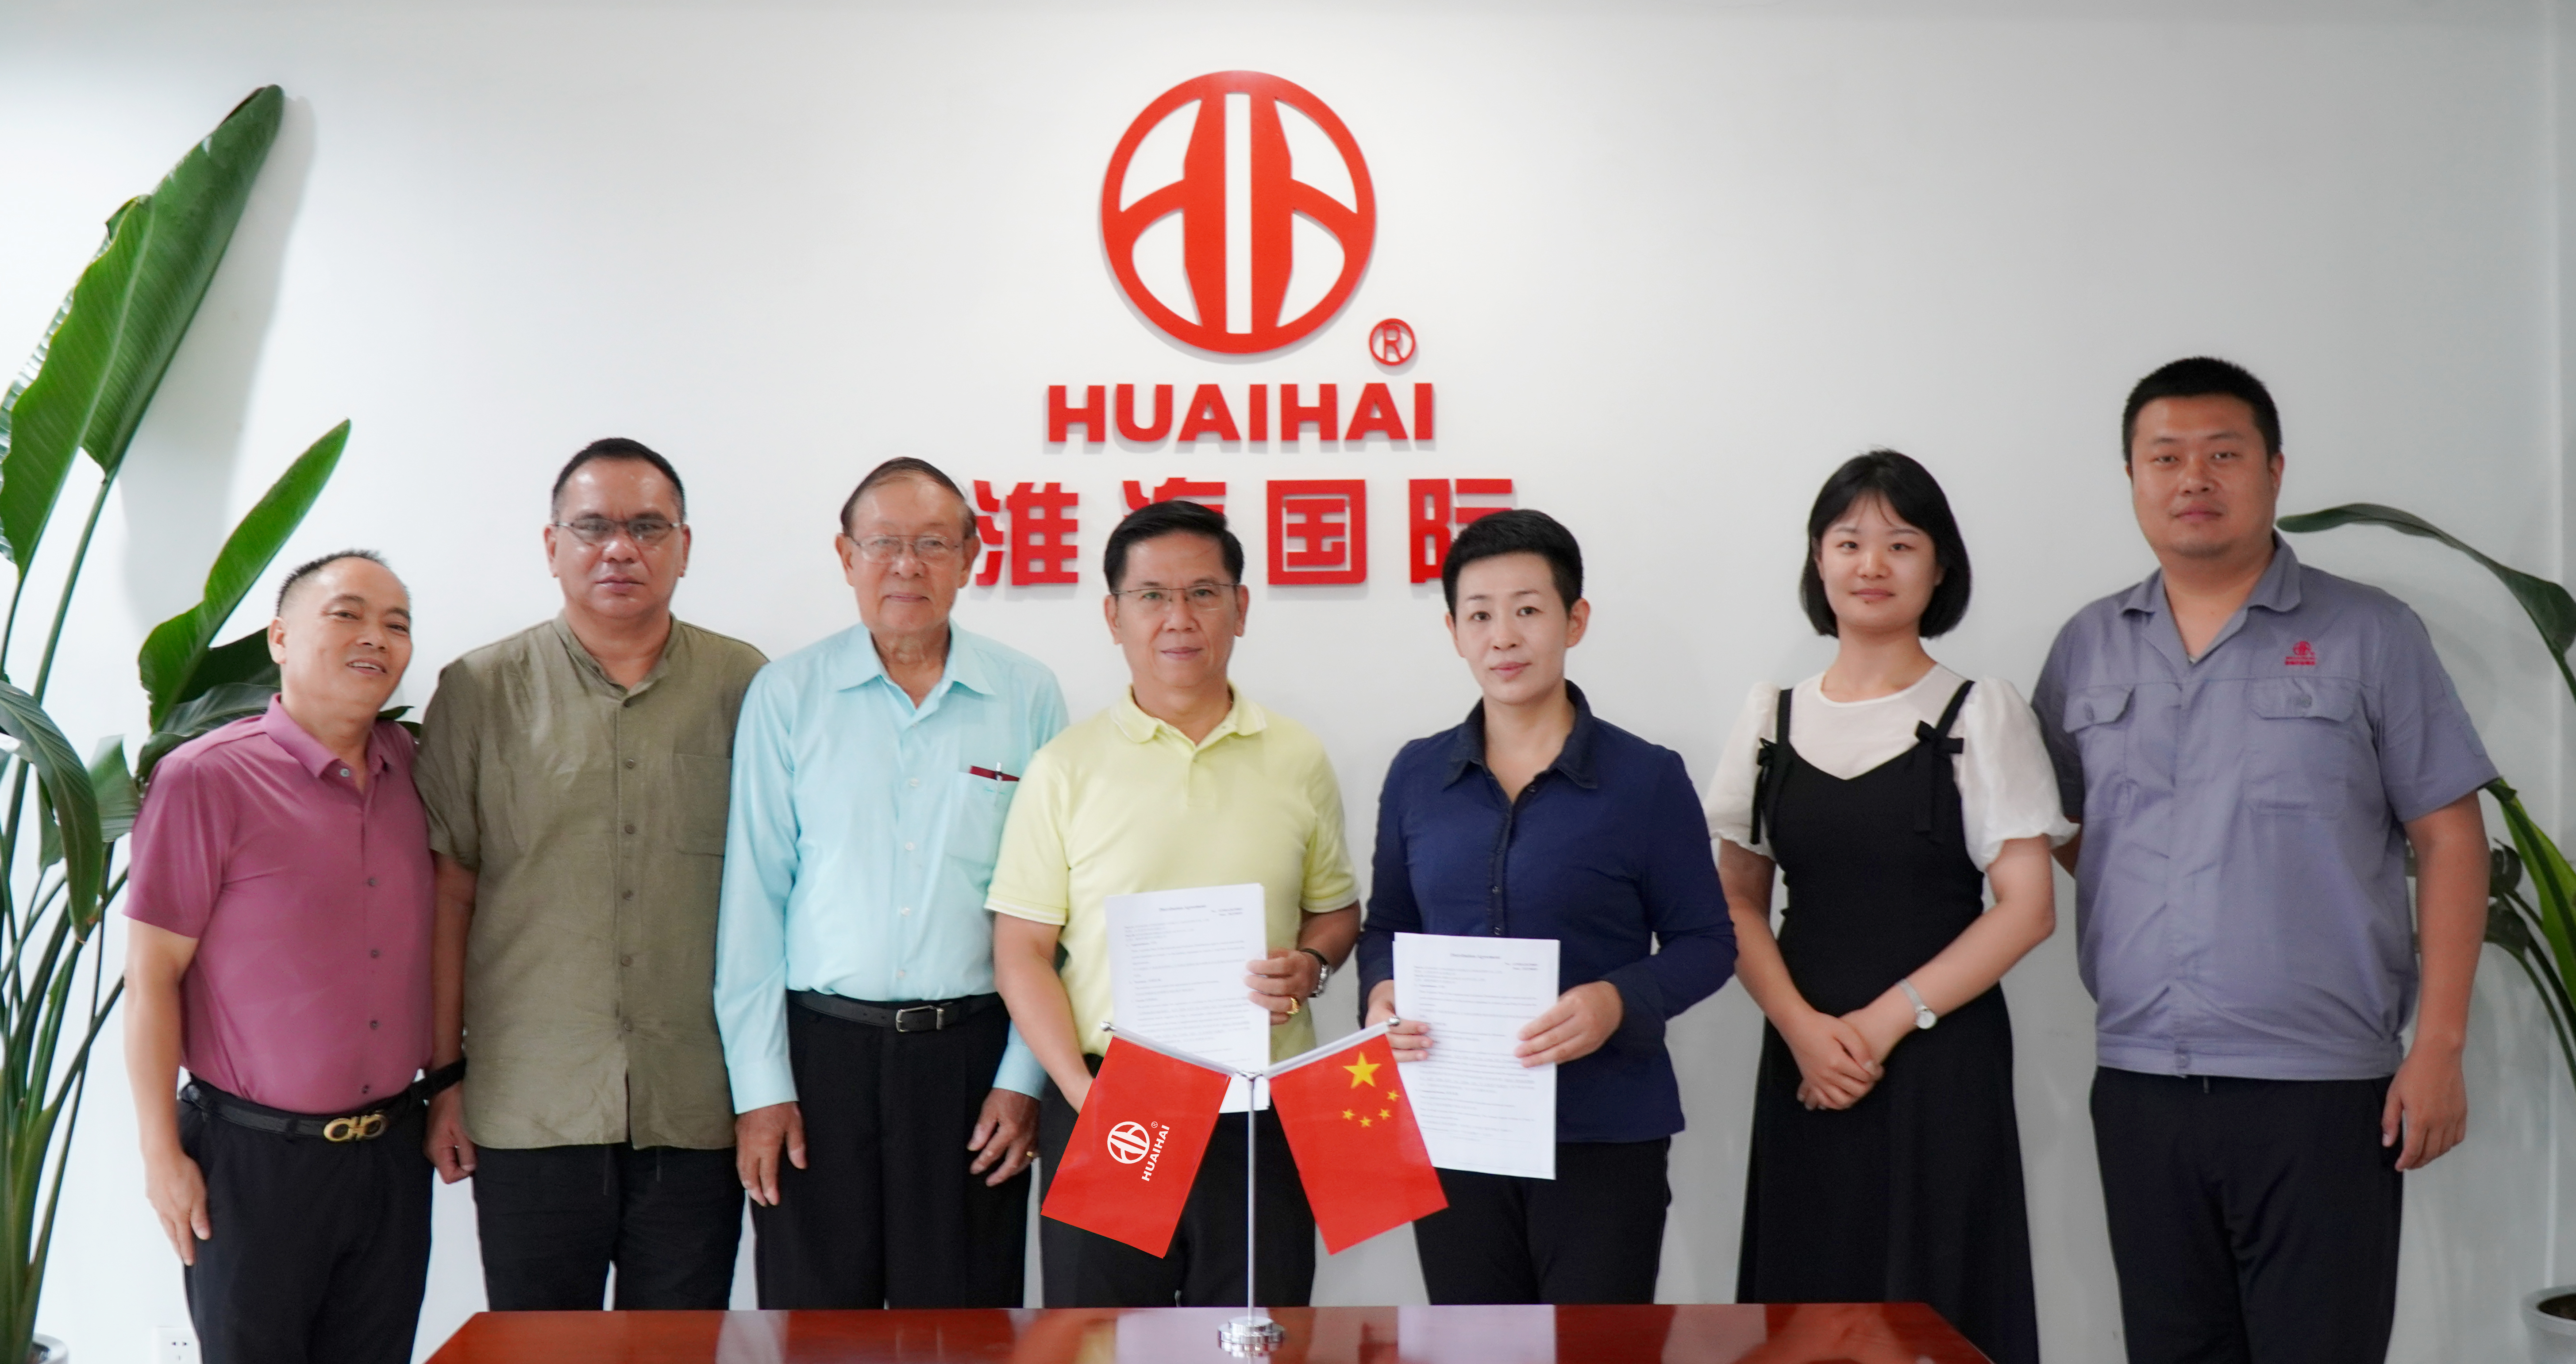 Tregtarët Huaihai Global dhe Azia Juglindore nisin një kapitull të ri bashkëpunimi